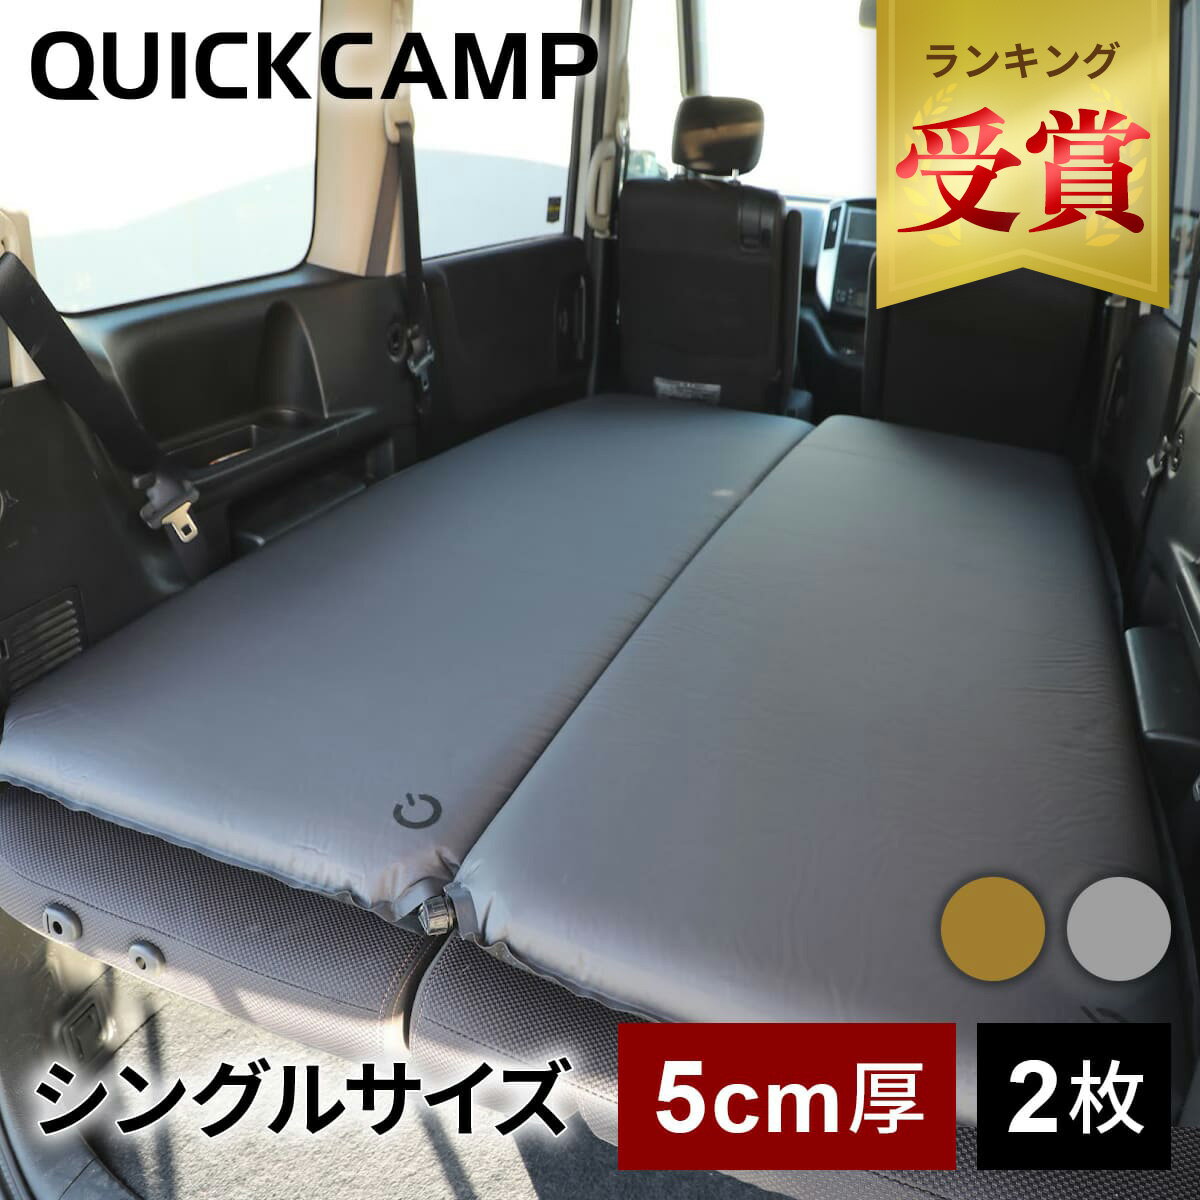 クイックキャンプ QUICKCAMP インフレーターマット 車中泊マット 5cm シングル グレー QC-CM5.0 計2枚セット